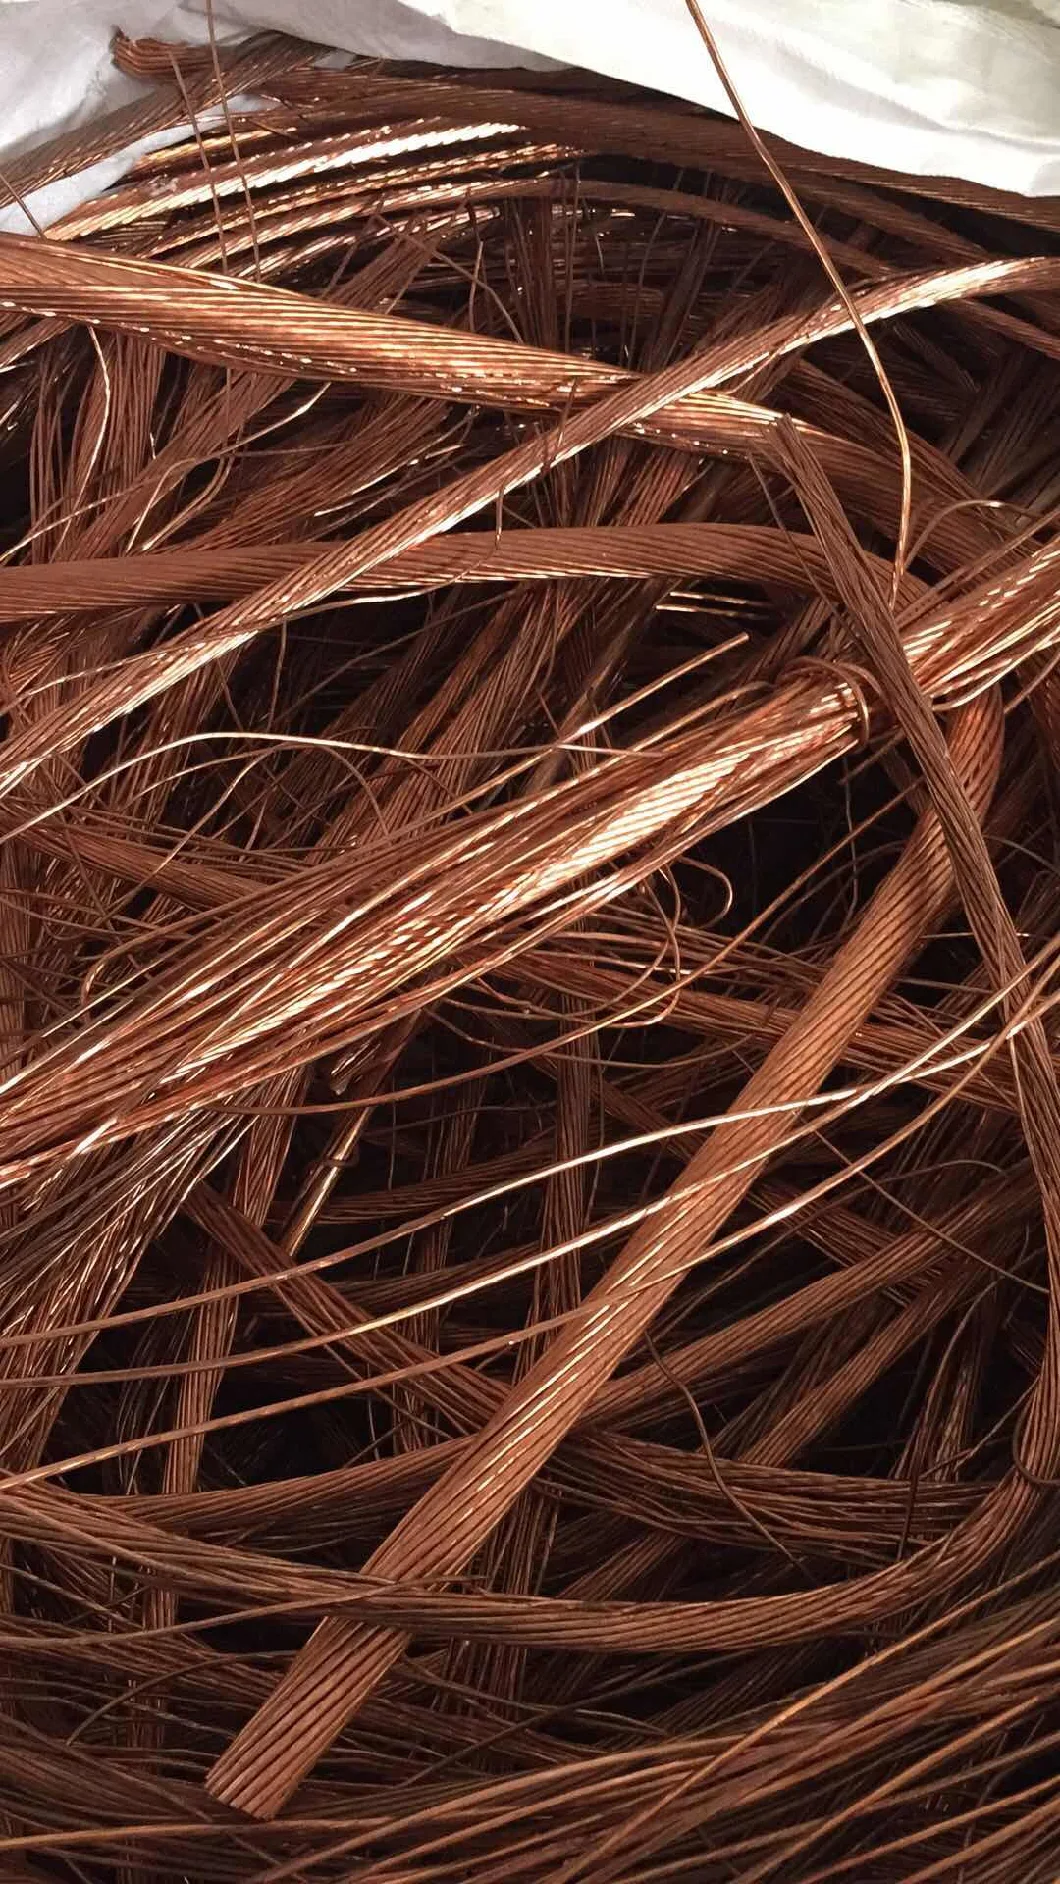 High Purity Copper Wire Scrap 99.99% Copper Scrap Mill-Berry Copper Factory Price